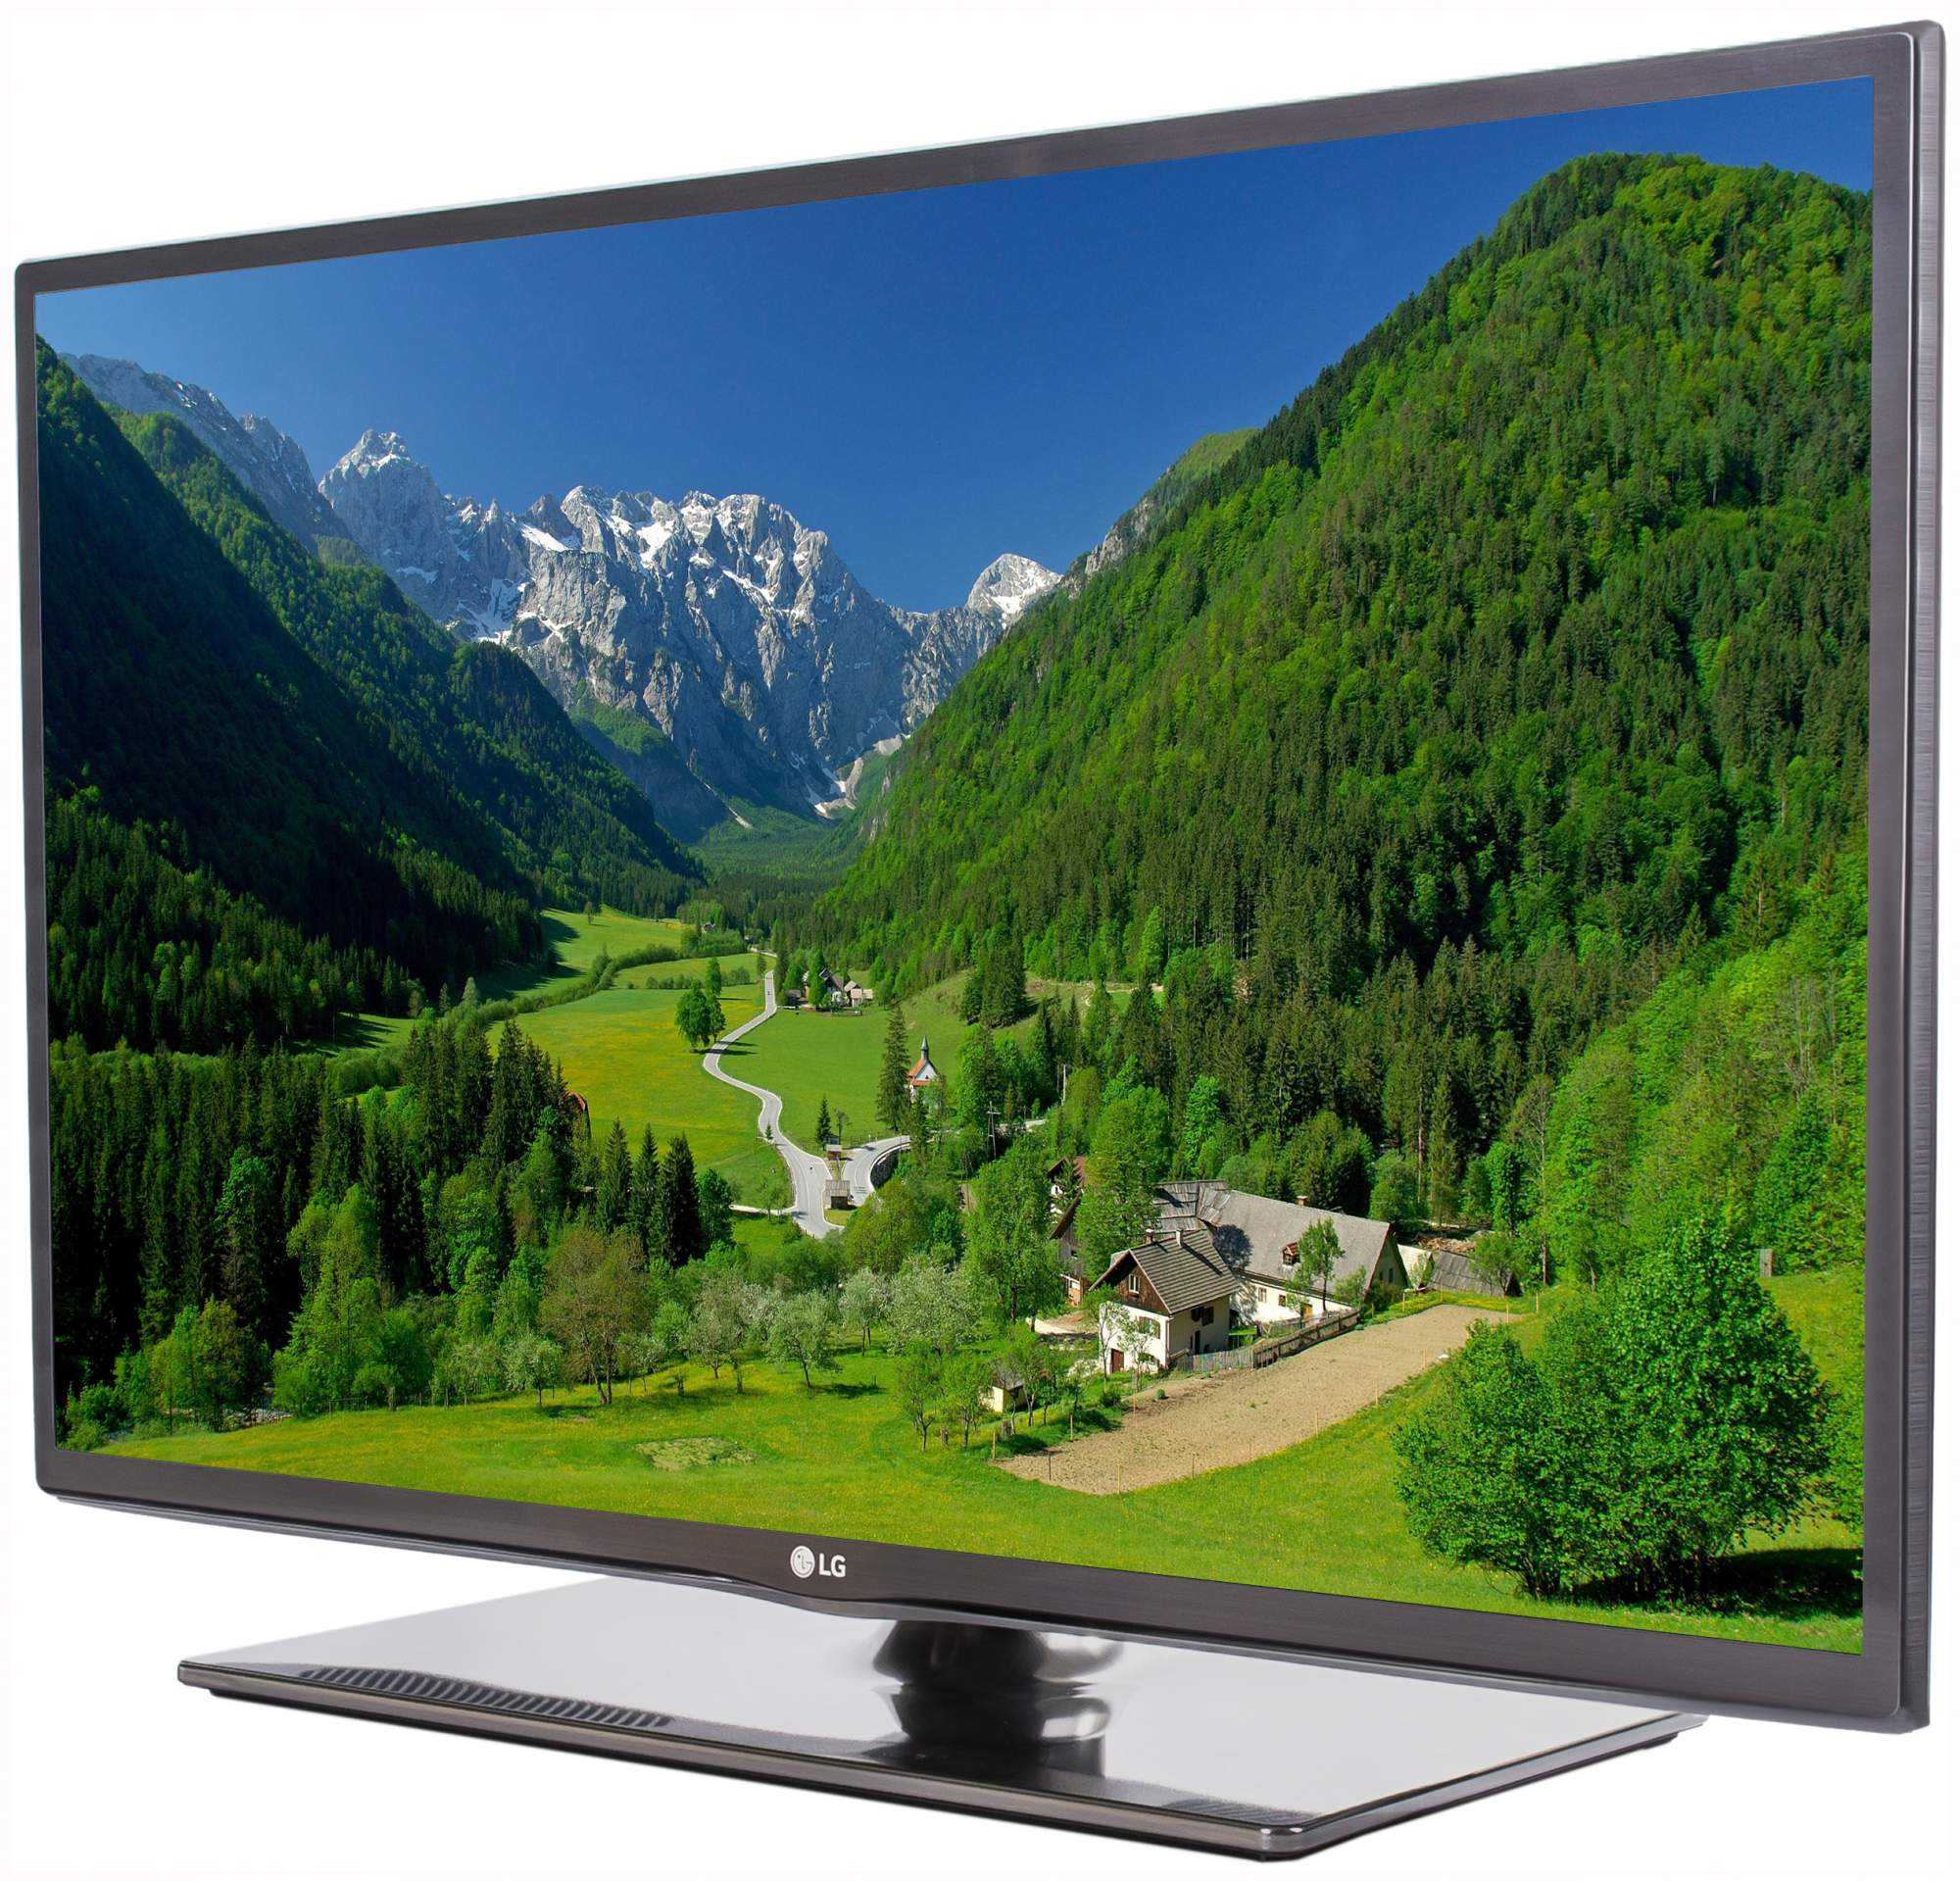 Lg 50pn650t (черный) - купить , скидки, цена, отзывы, обзор, характеристики - телевизоры